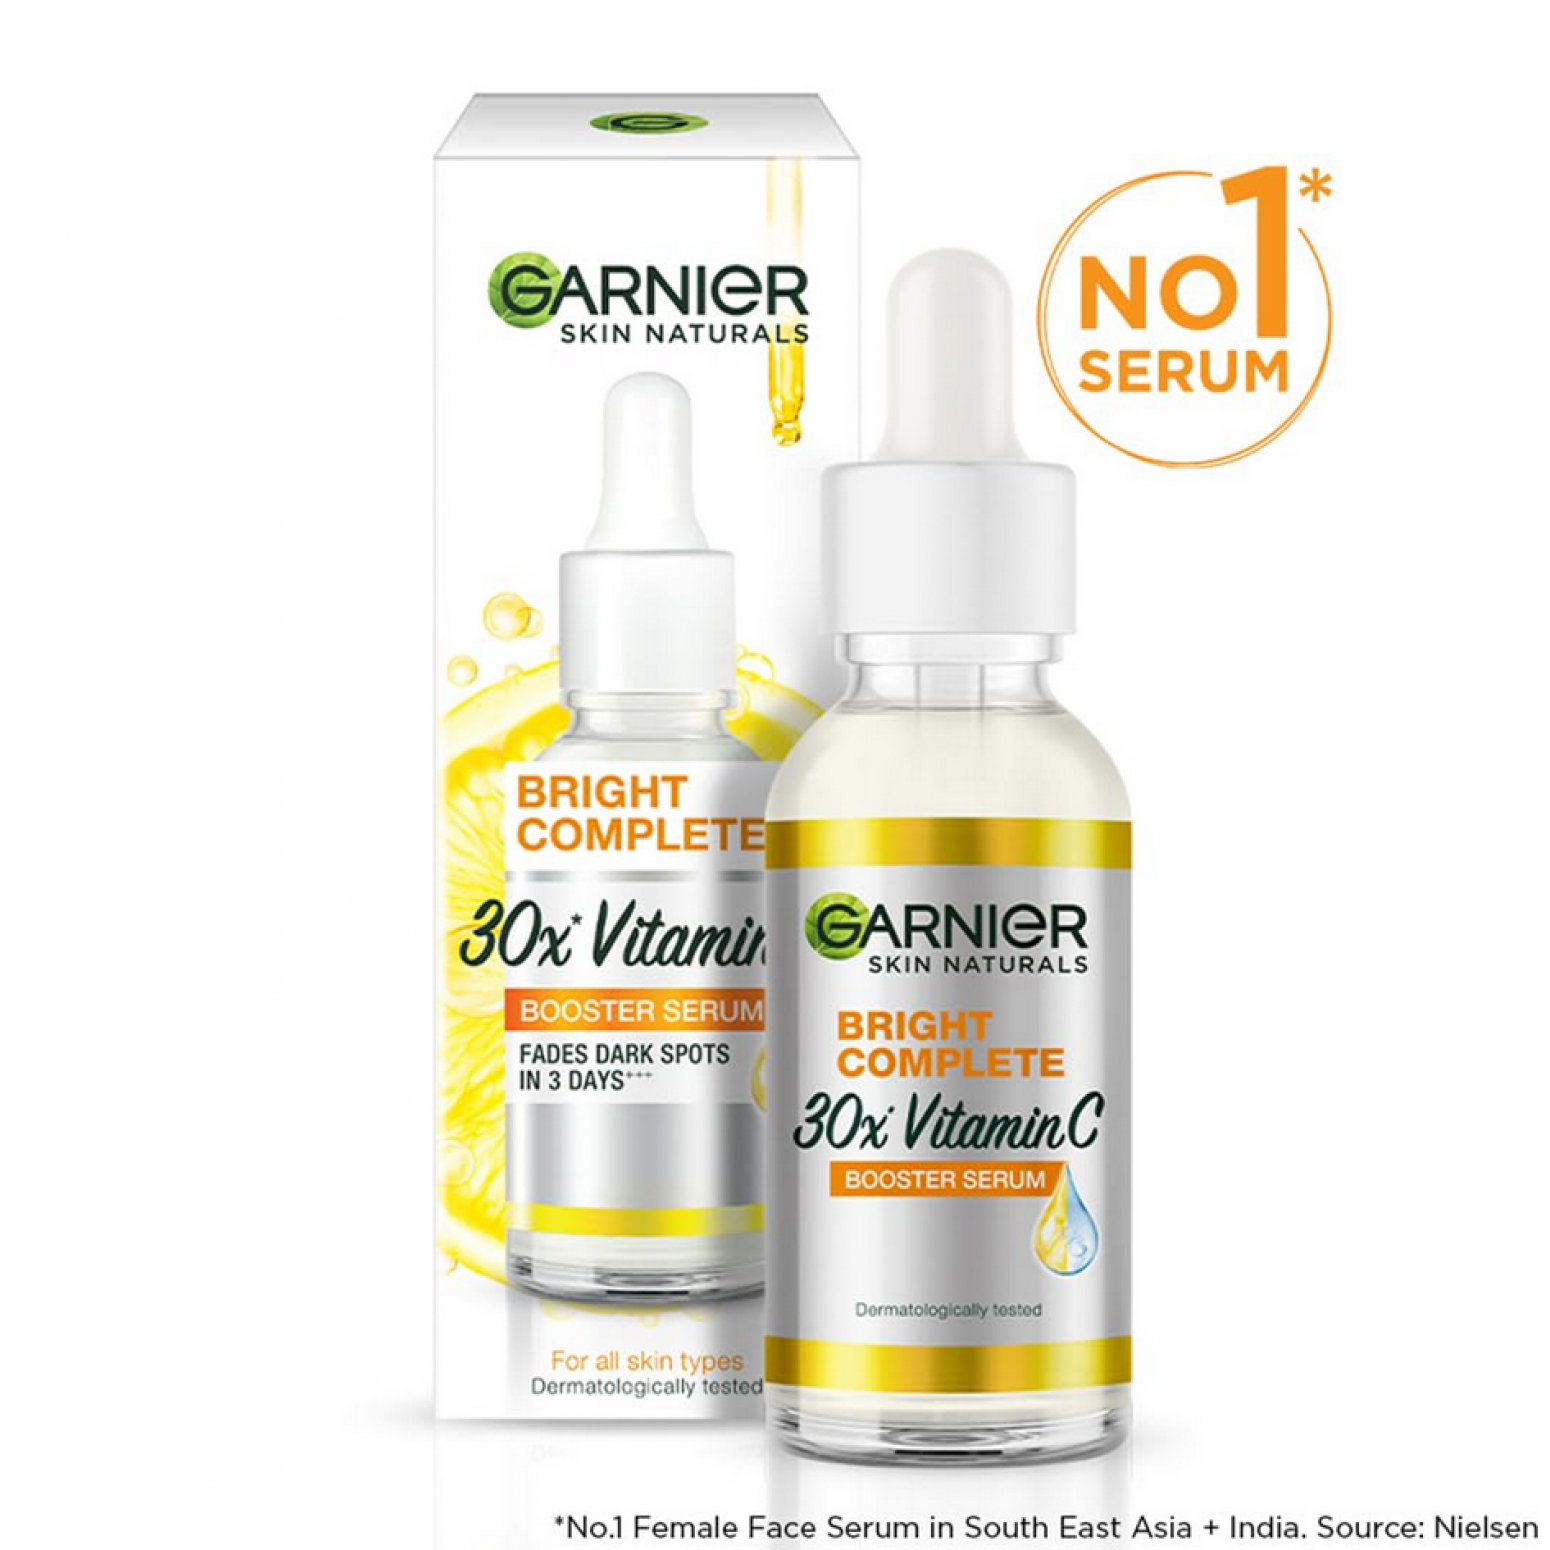 Garnier Bright Complete 30X Vitamin C Booster Serum 30ml.